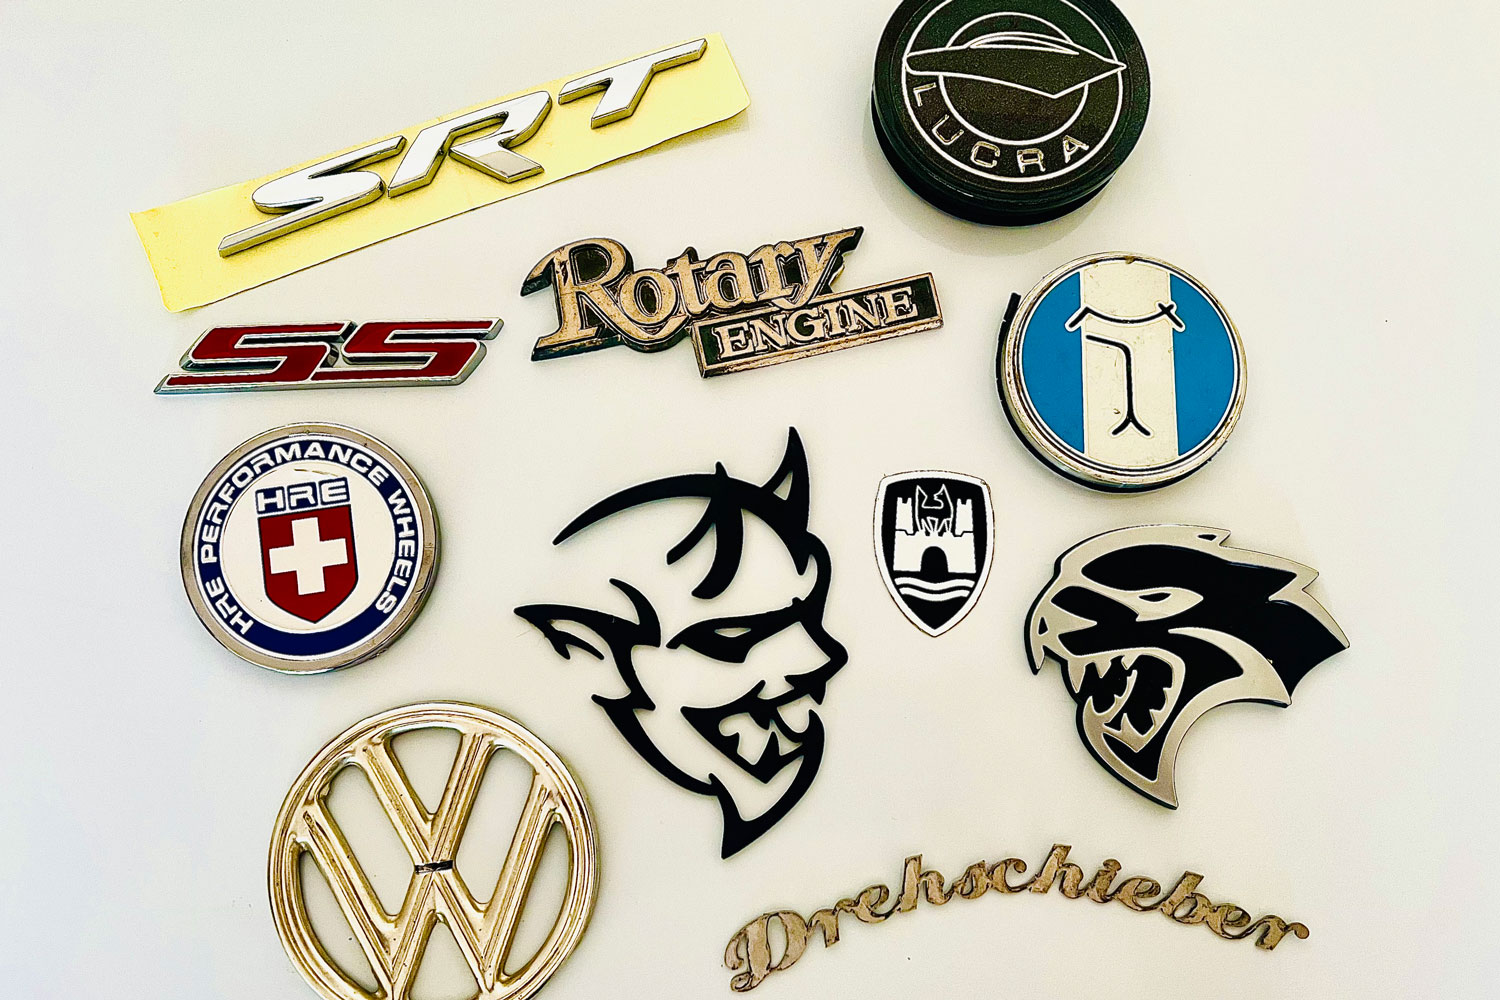 A variety of adhesive car badges